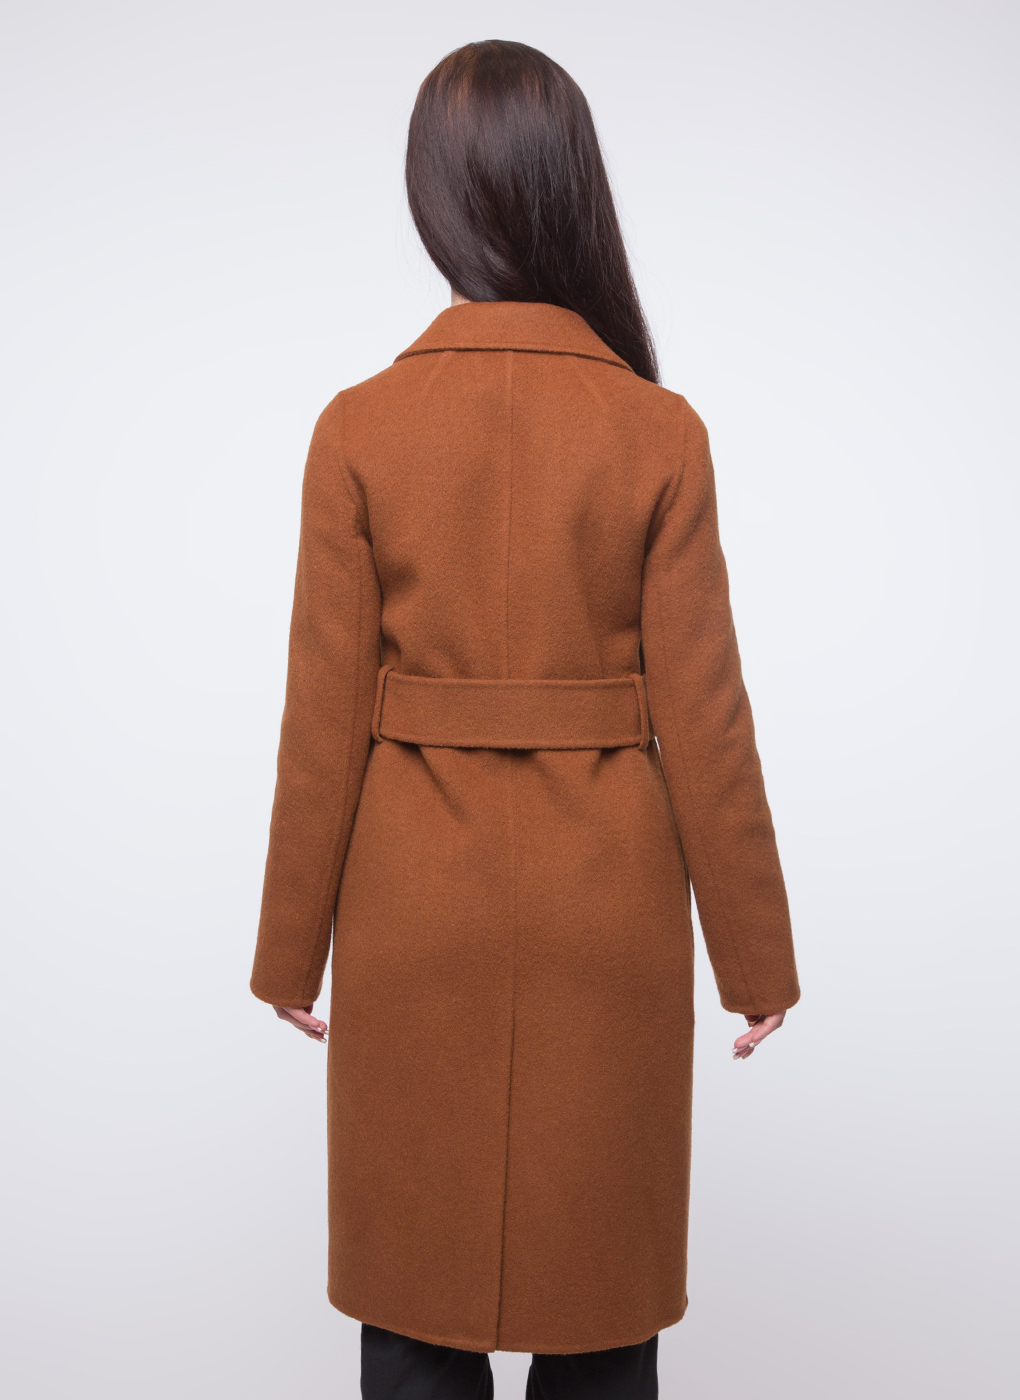 Пальто женское Каляев 38960 коричневое 48 RU